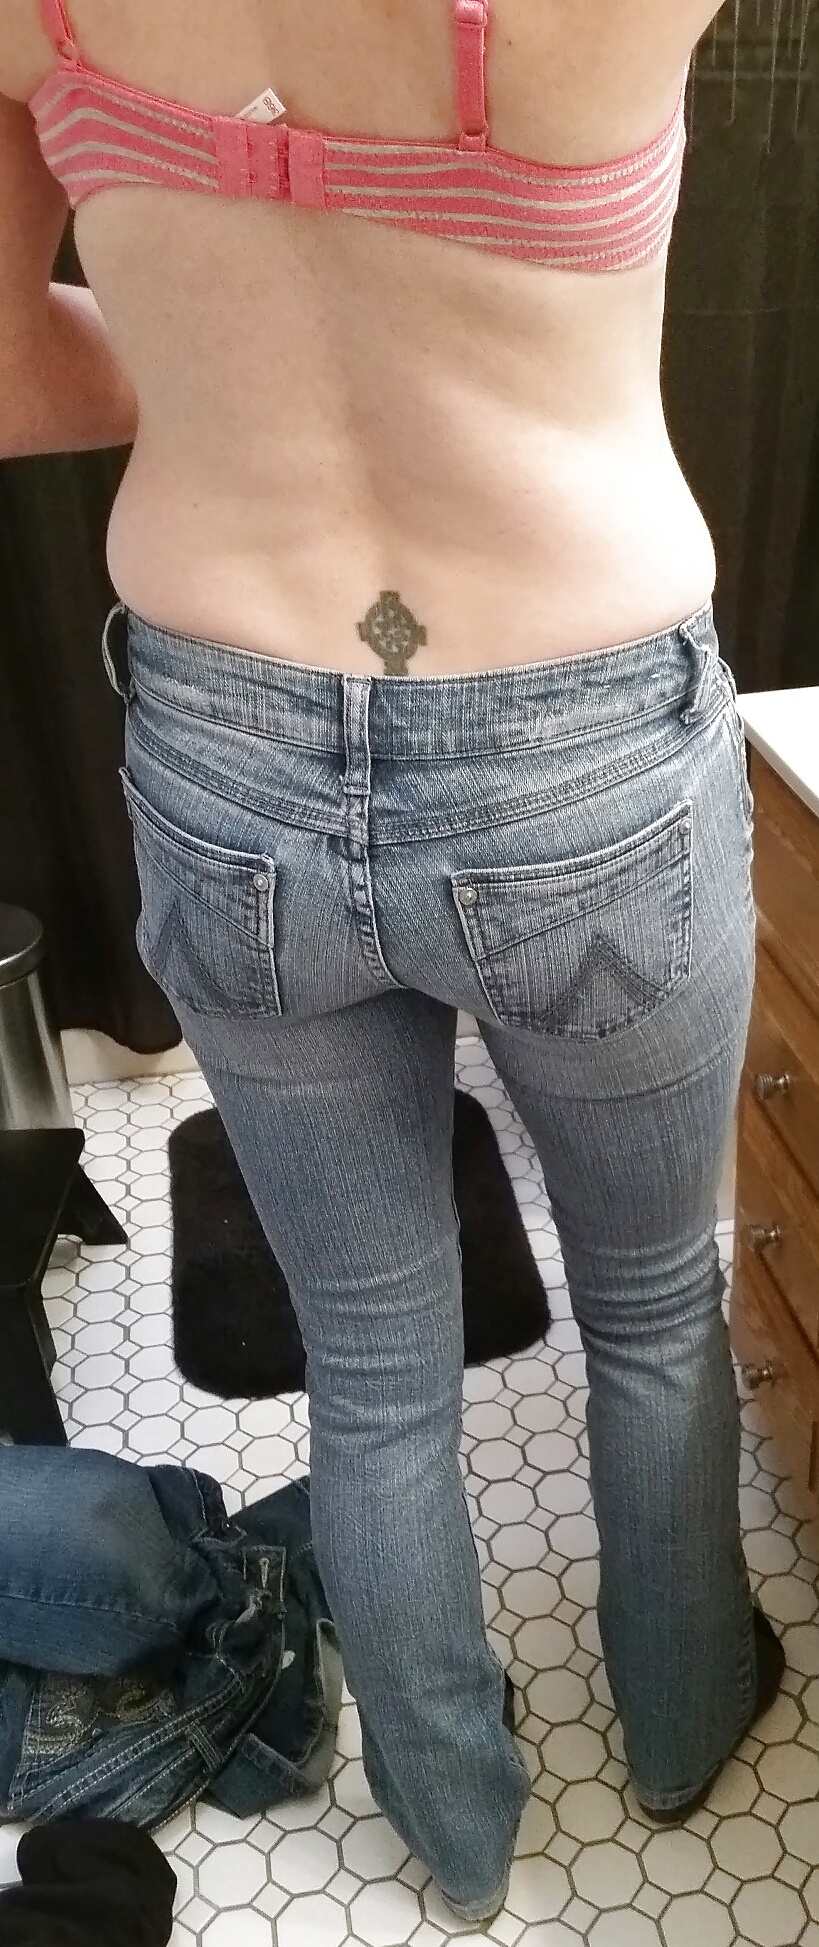 random jeans, ass, bra shots pict gal